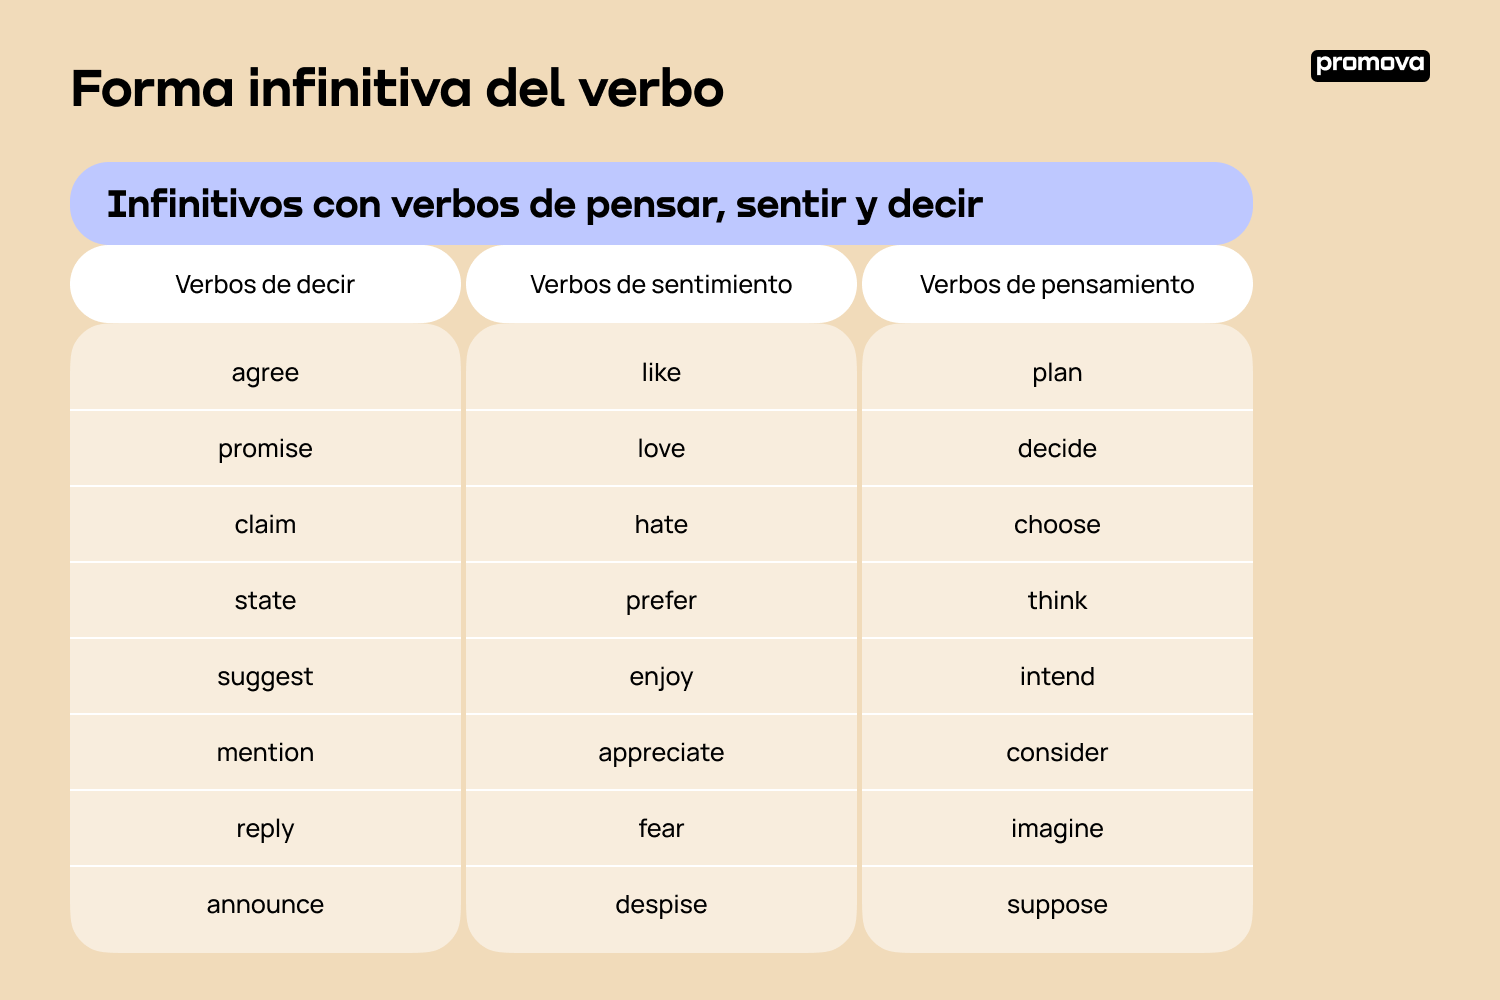 Aprende a utilizar la forma infinitiva del verbo correctamente